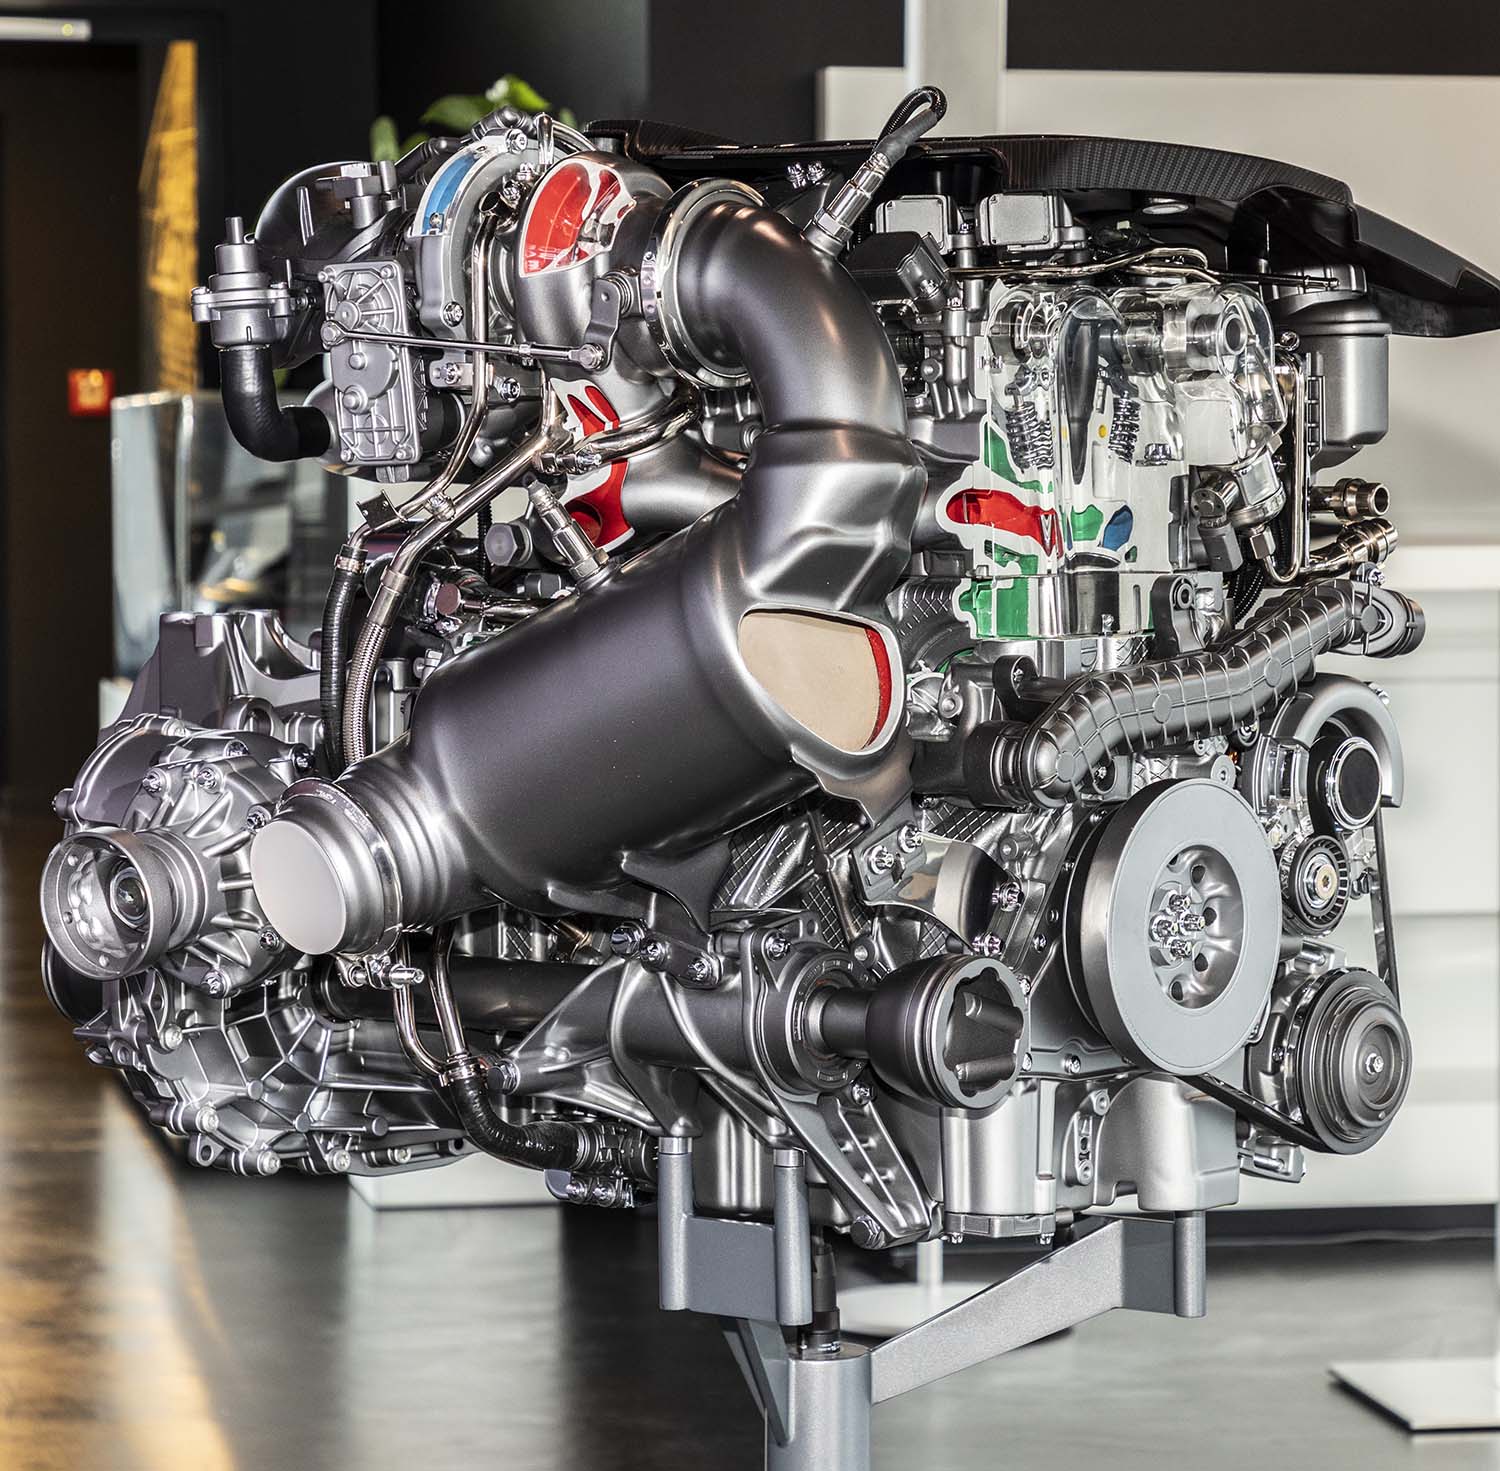 Mercedes-AMG M139 2.0L, turbocharged, four-cylinder engine cutaway